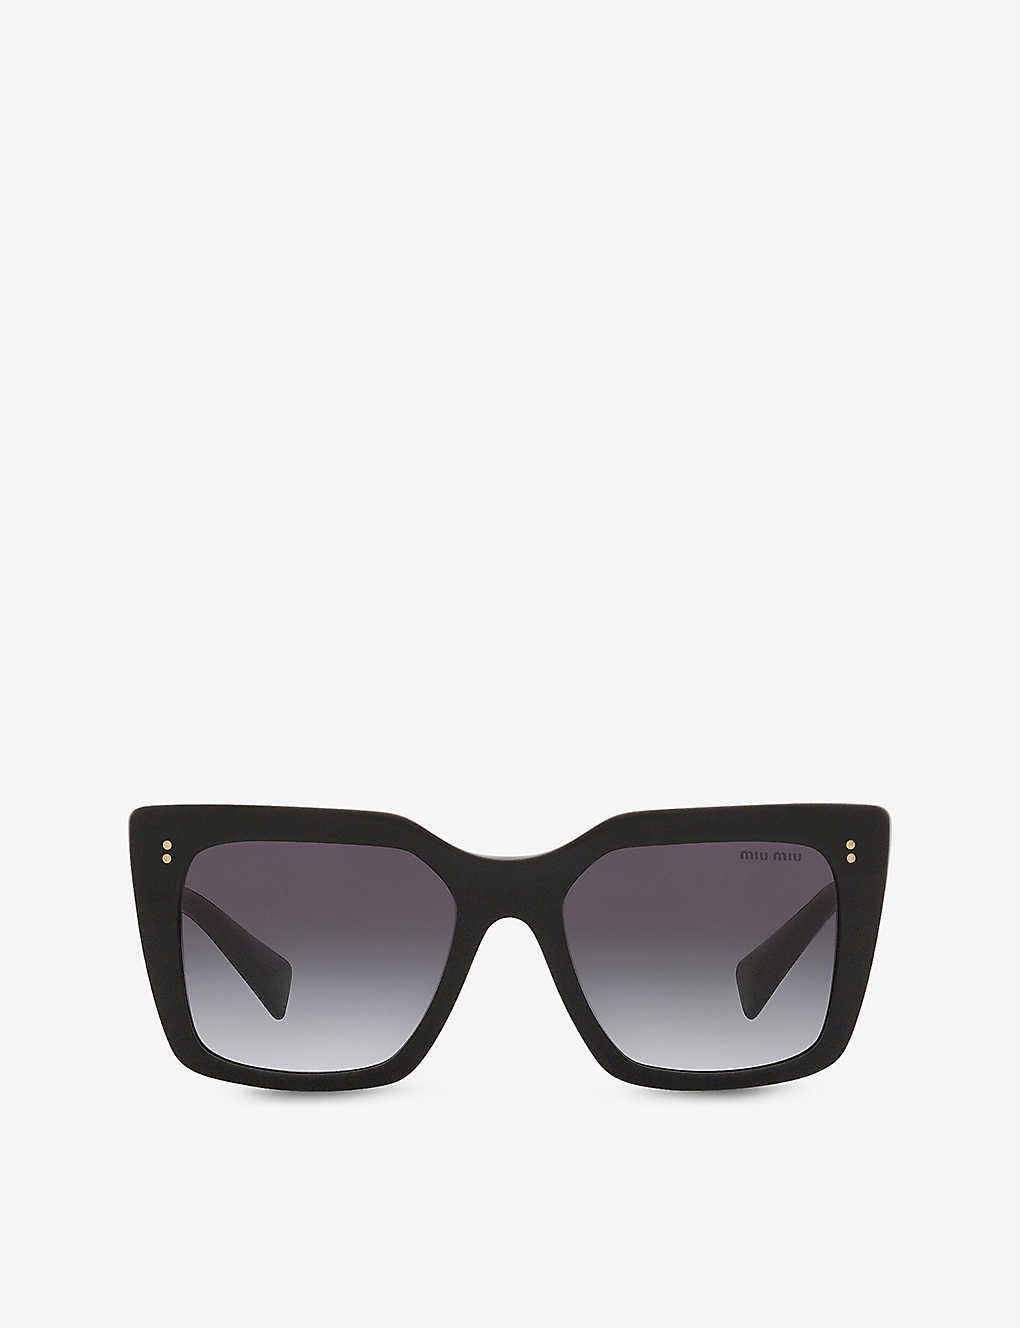 Shop Miu Miu Women's Black Mu02ws Square-frame Acetate And Metal Sunglasses